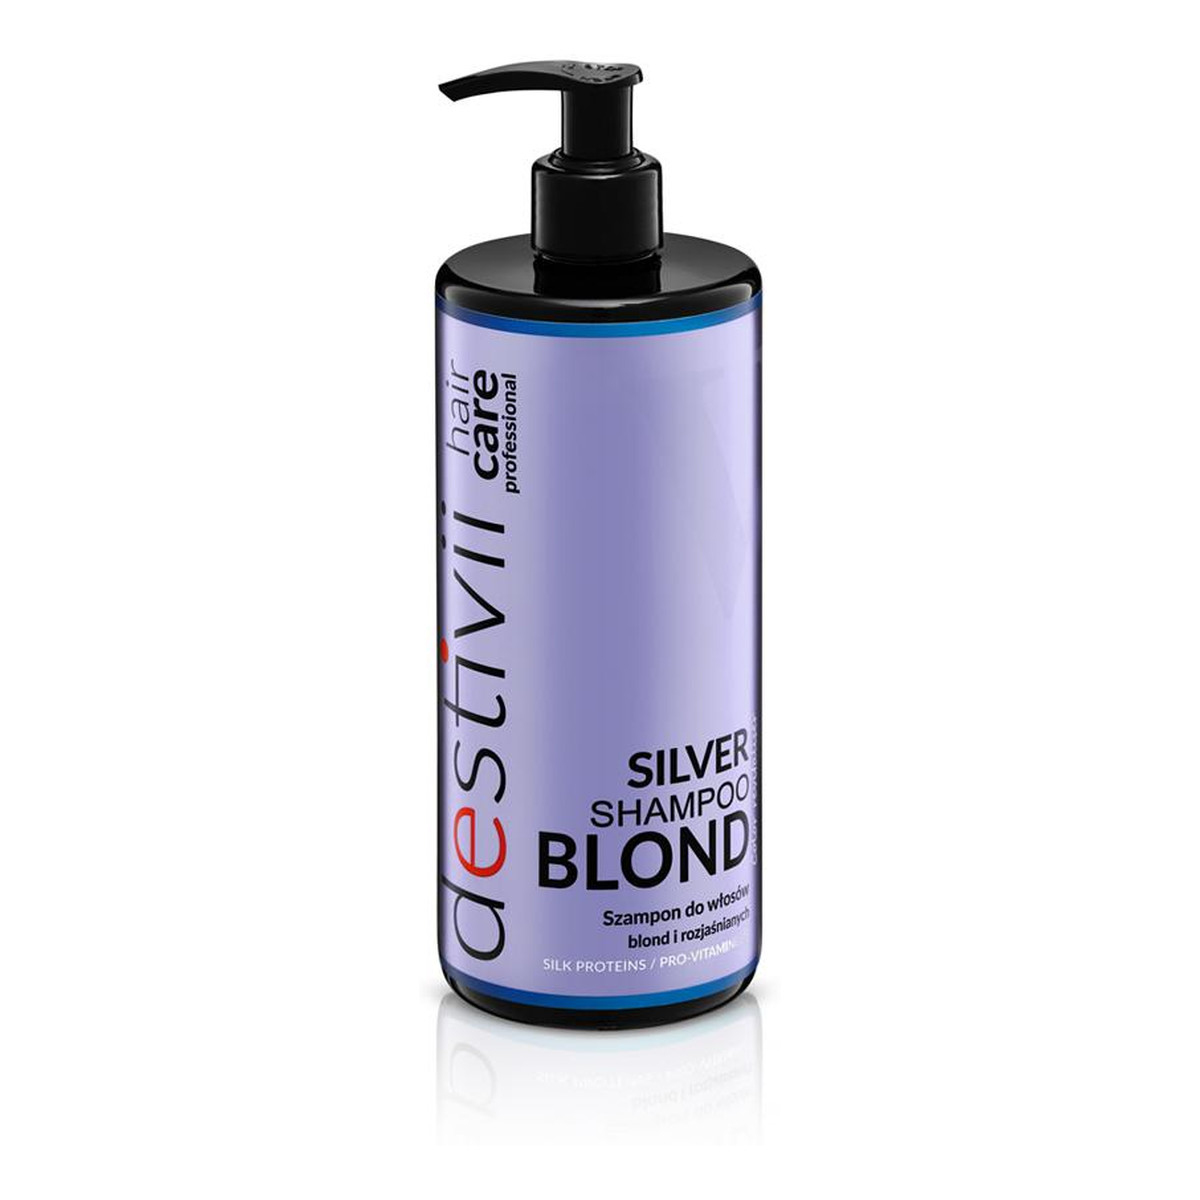 Destivii Silver shampoo blond szampon do włosów blond i rozjaśnianych 500ml